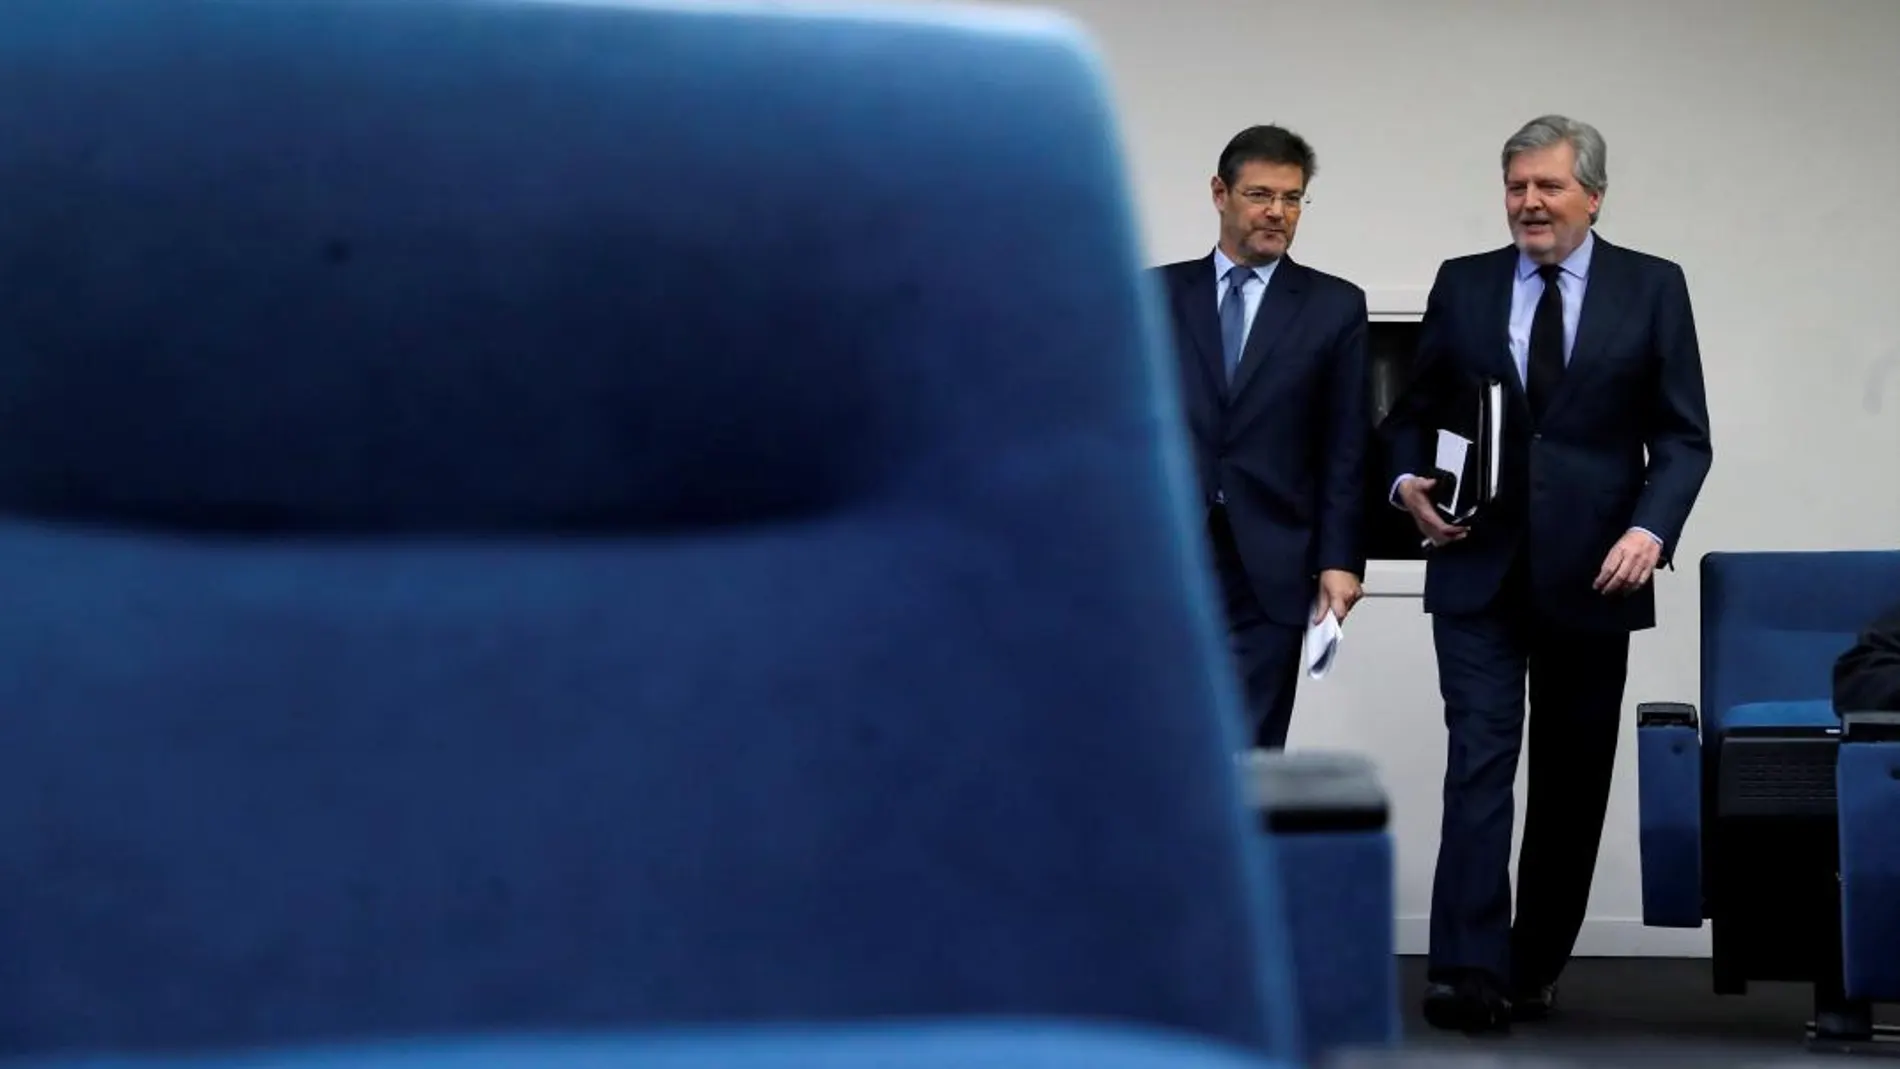 El ministro de Justicia Rafael Catalá (i) y el ministro portavoz Iñigo Méndez de Vigo, durante la rueda de prensa.